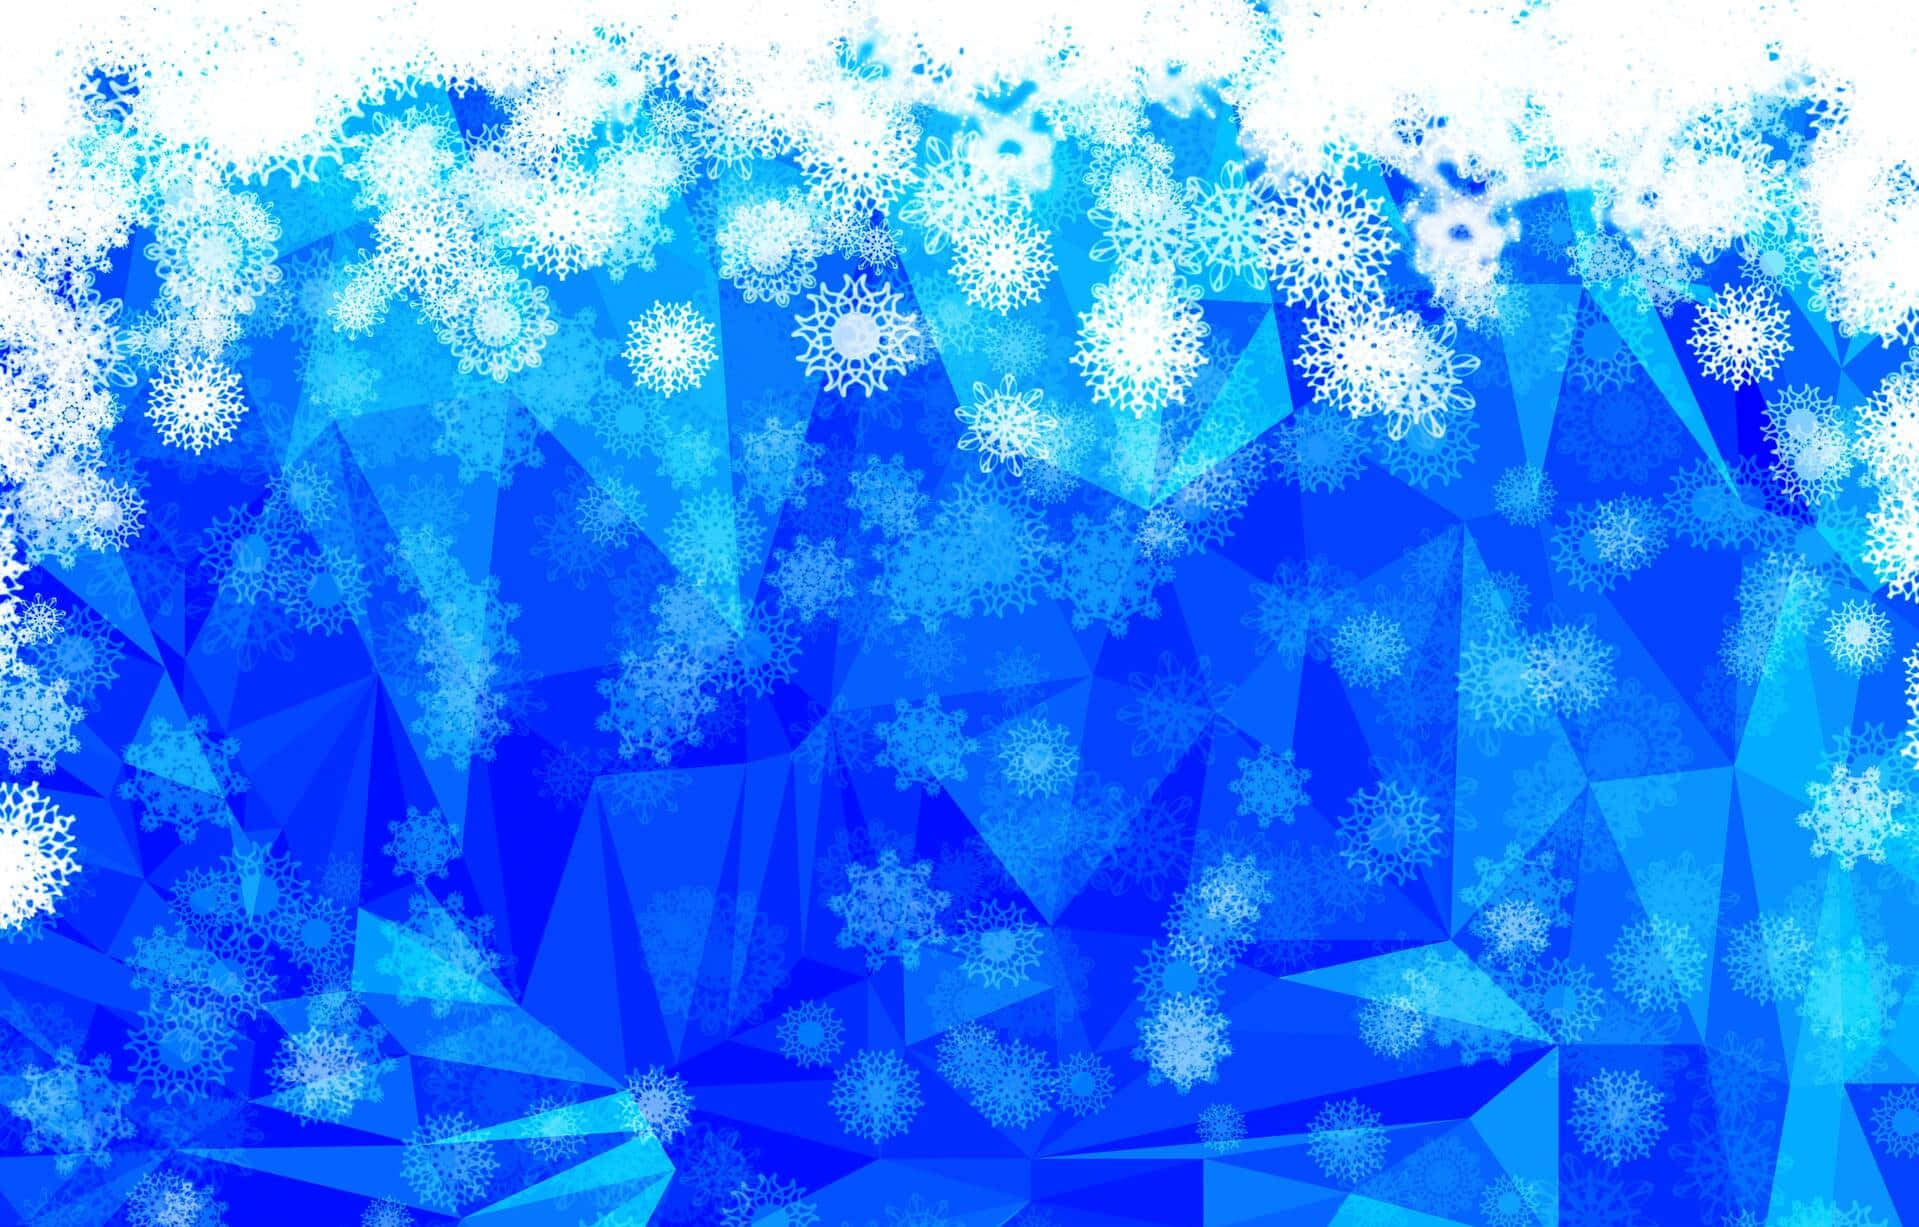 Pristine icy landscape